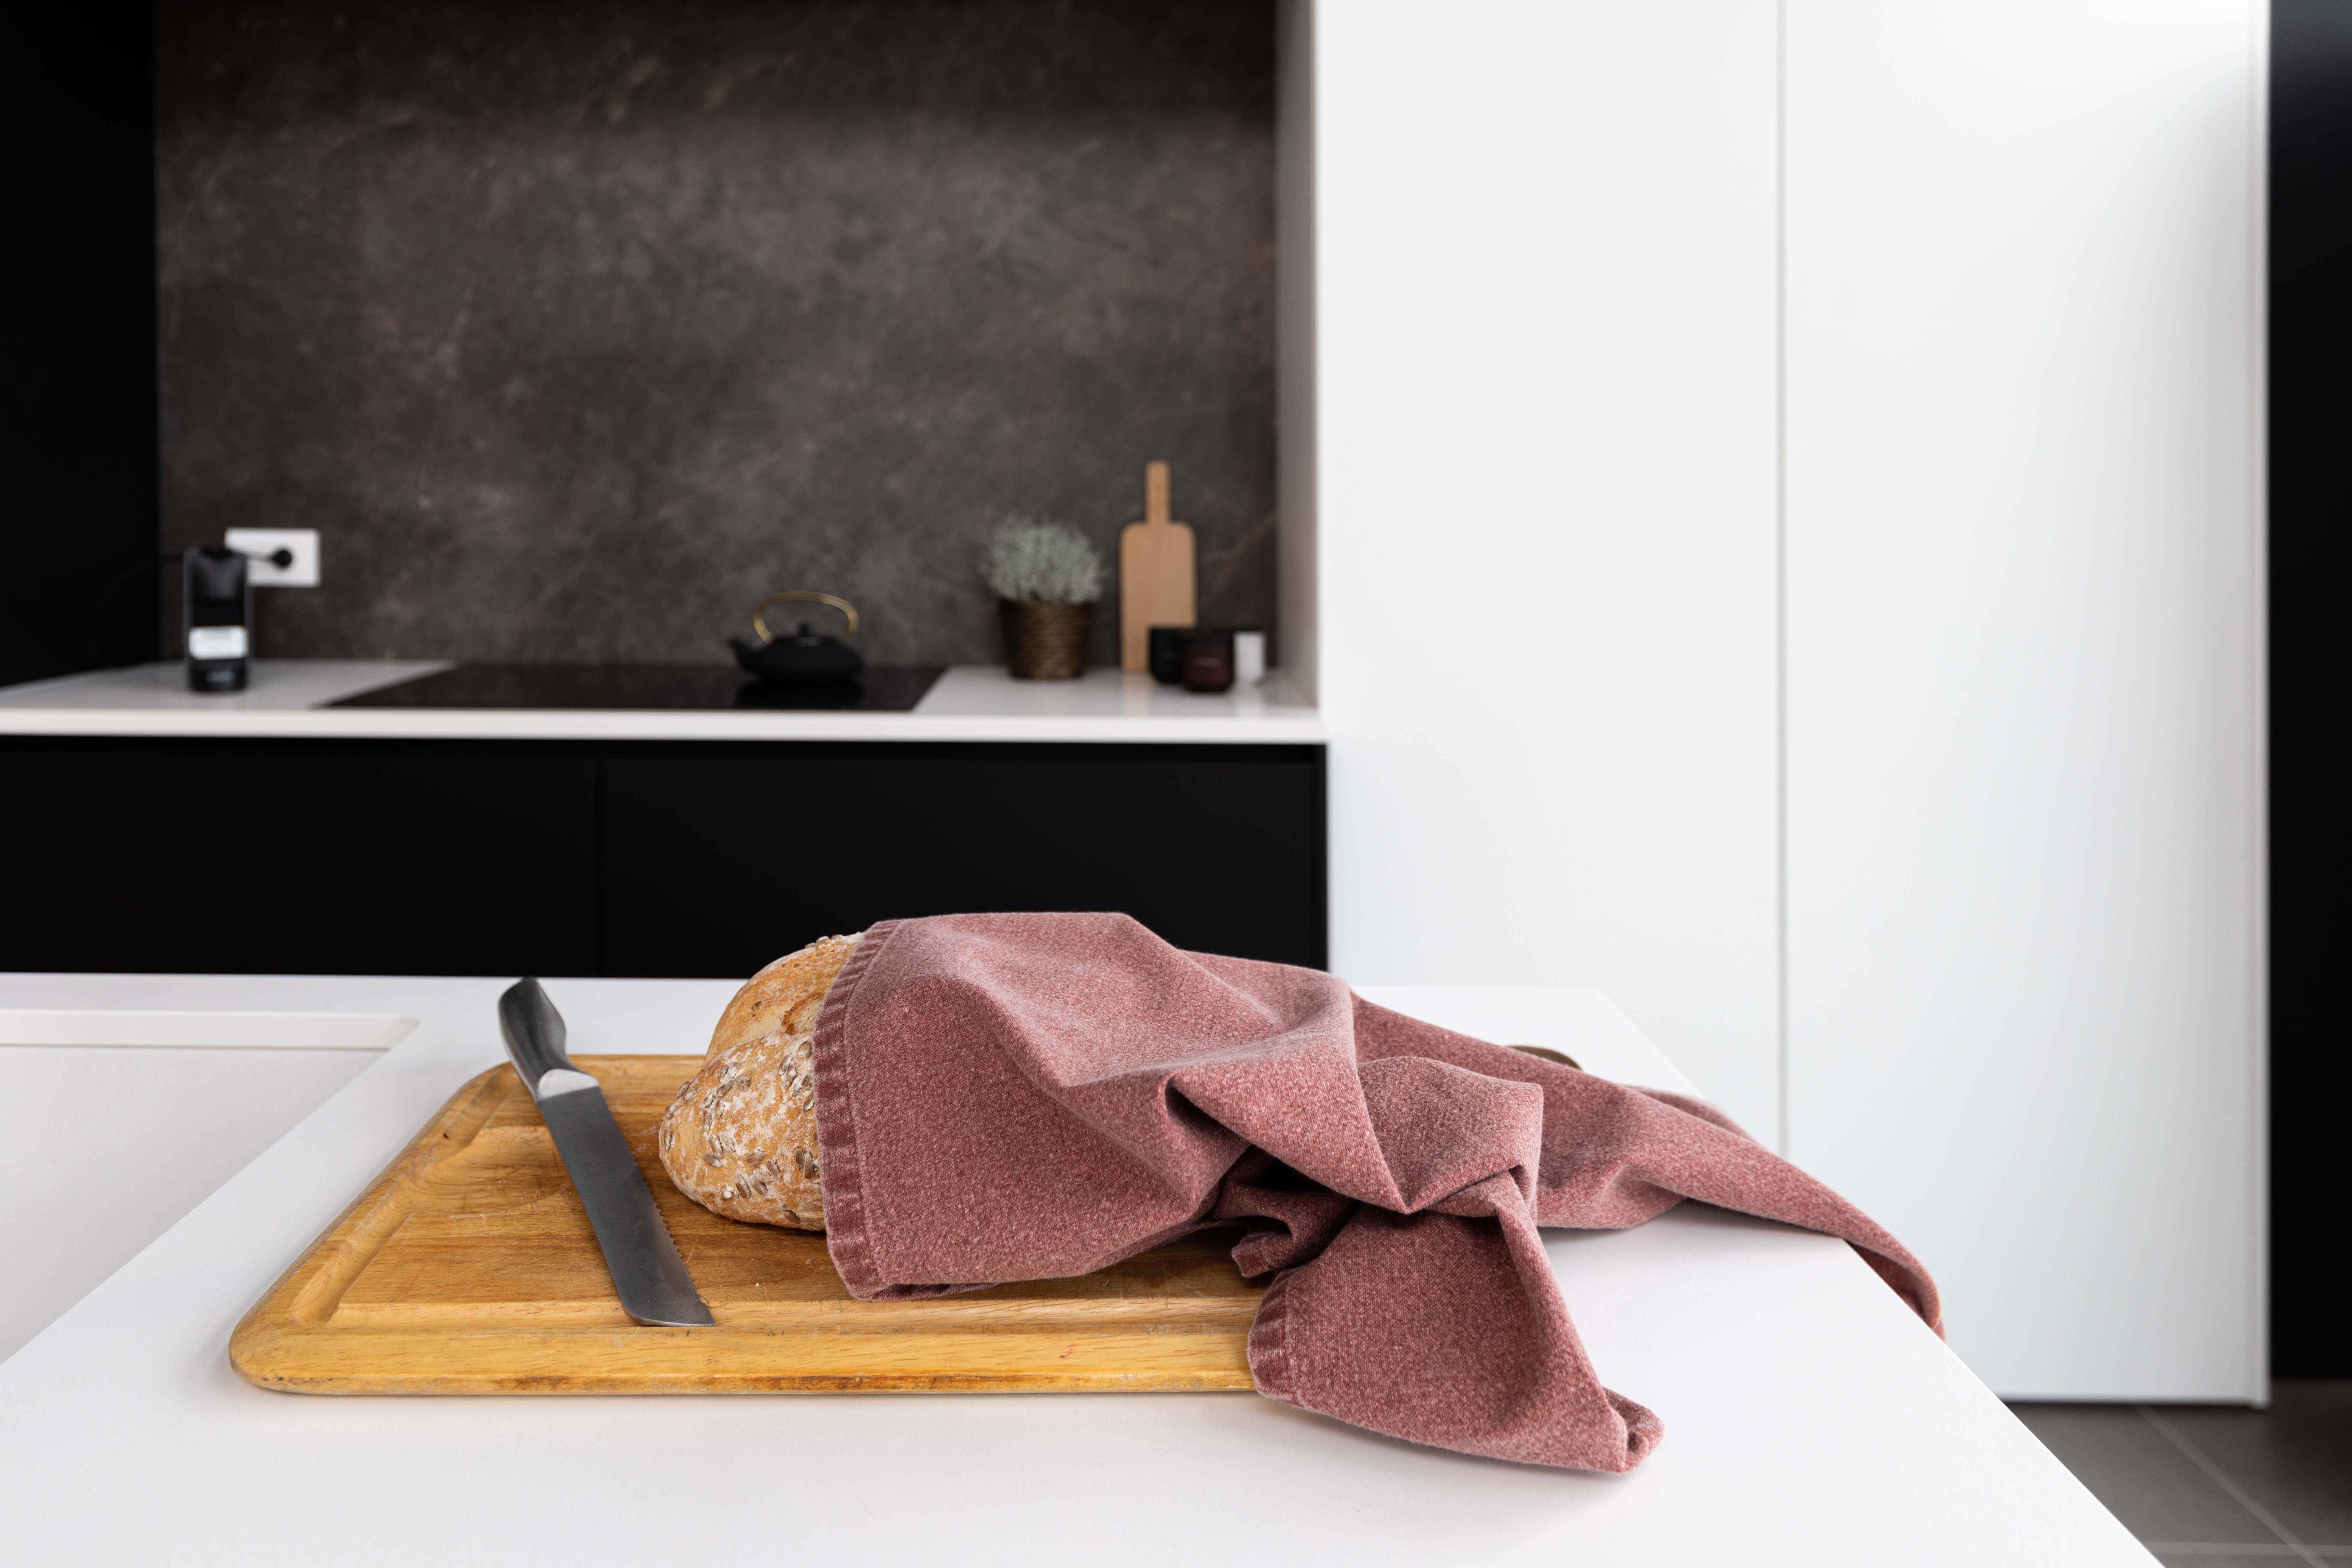 Een keukendoek is om een brood gewikkeld dat op een snijplank is geplaatst